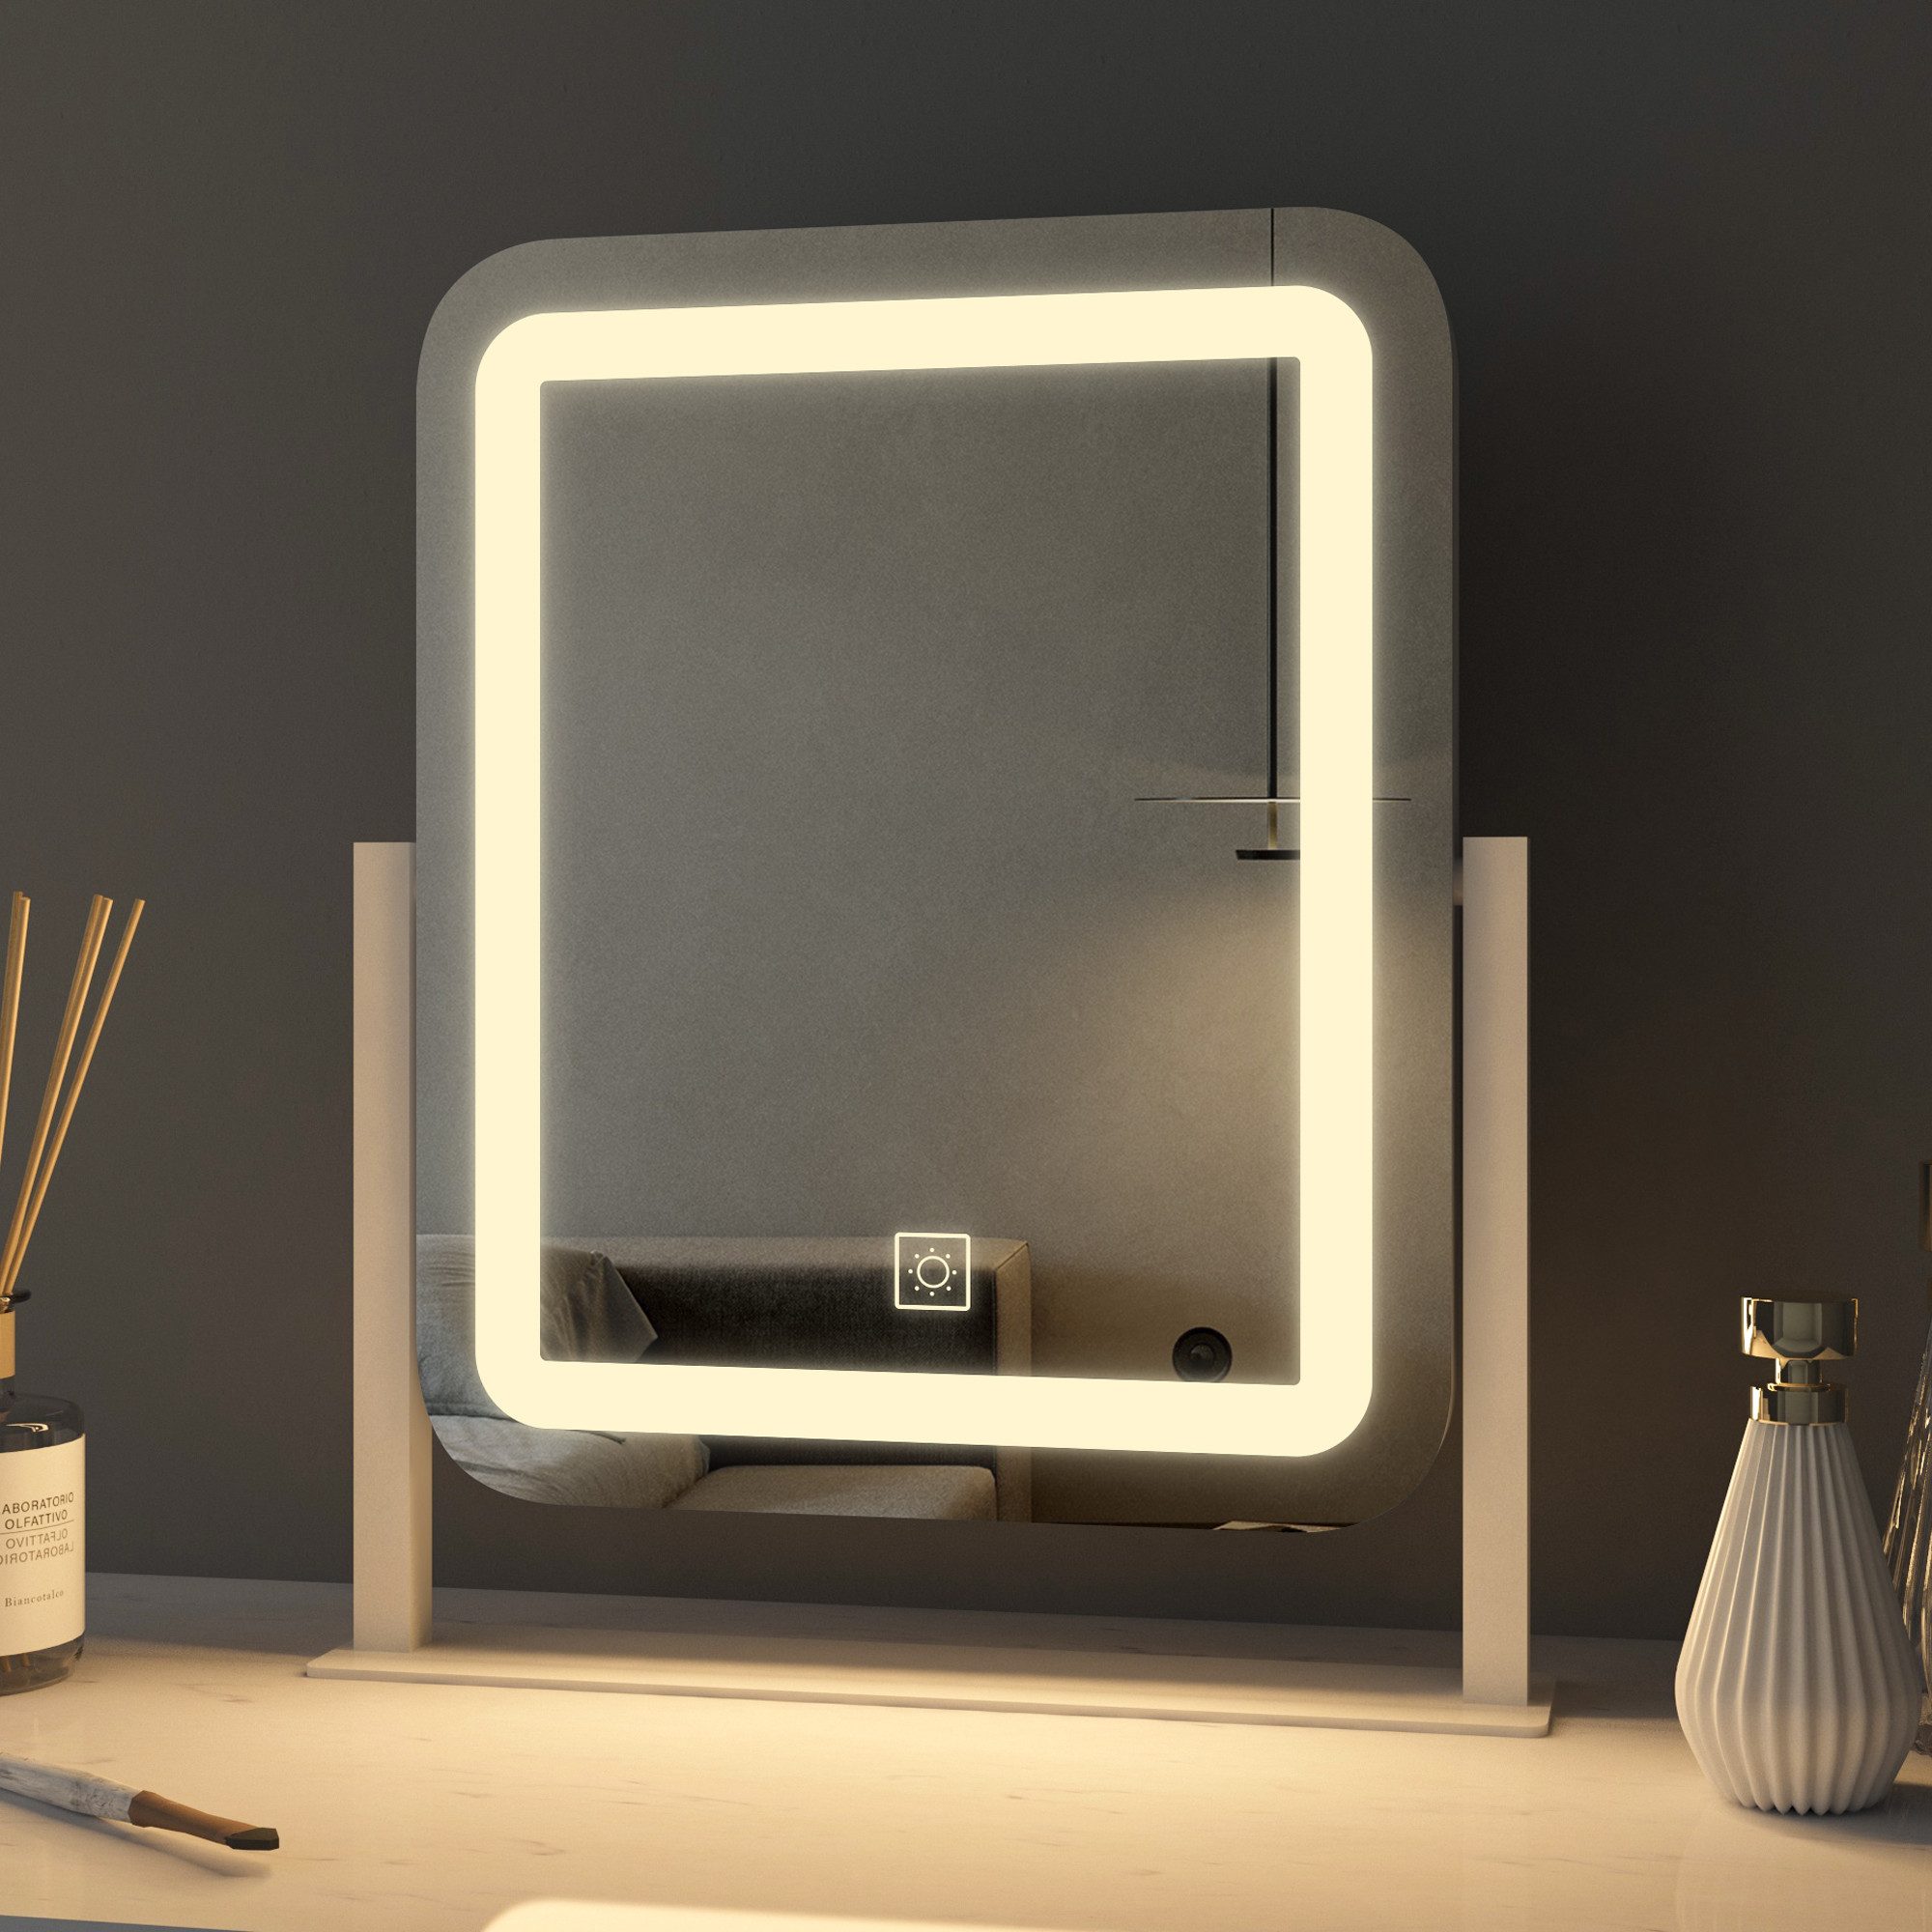 WDWRITTI Schminkspiegel LED Kosmetikspiegel Tischspiegel Make Up Spiegel Rechteckig (Make Up Spiegel Rechteckig, 3Lichtfarben, Helligkeit dimmbar), Touch, 360° Drehbar